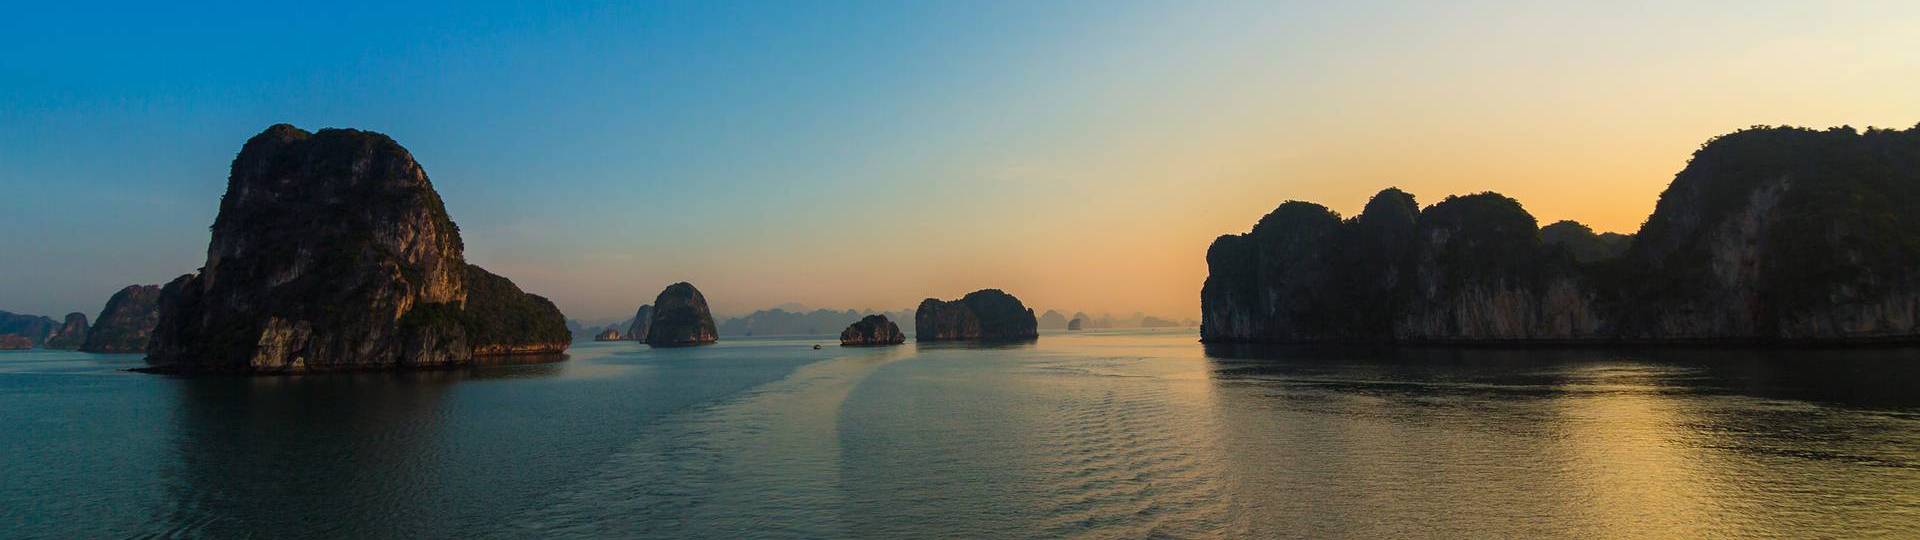 Hanoi to Halong Bay Cruise Tour - A Comprehensive Guide